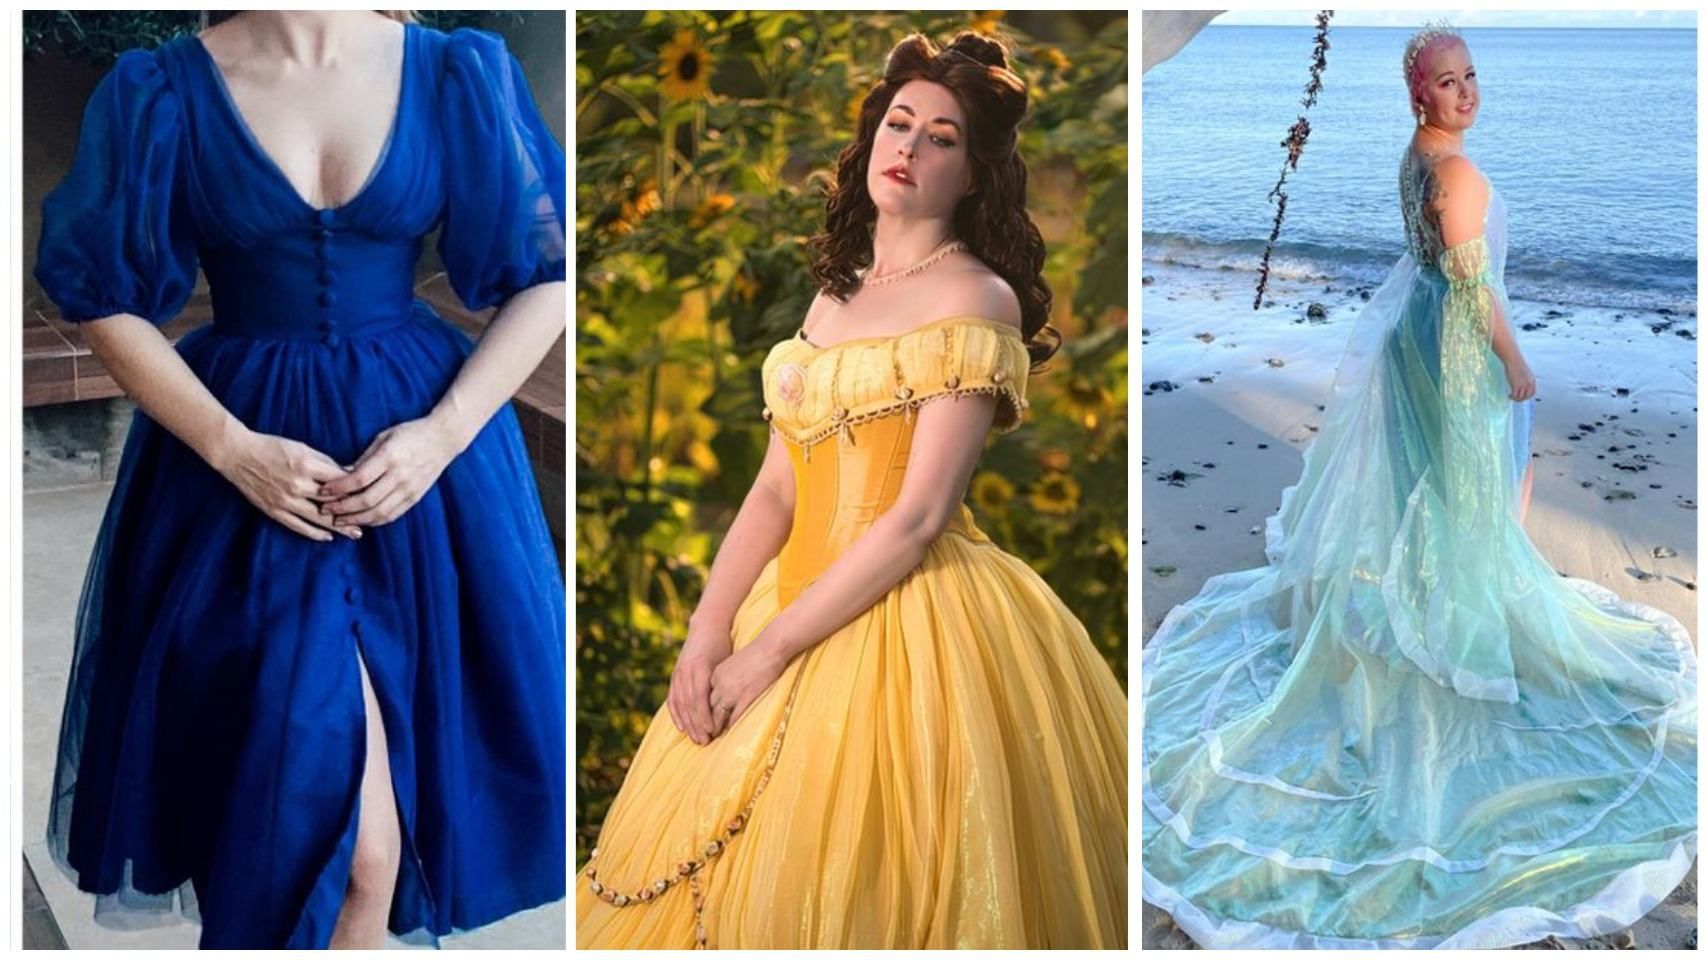 Почти высокая мода: 10 самодельных платьев, которым позавидовали бы принцессы - Life